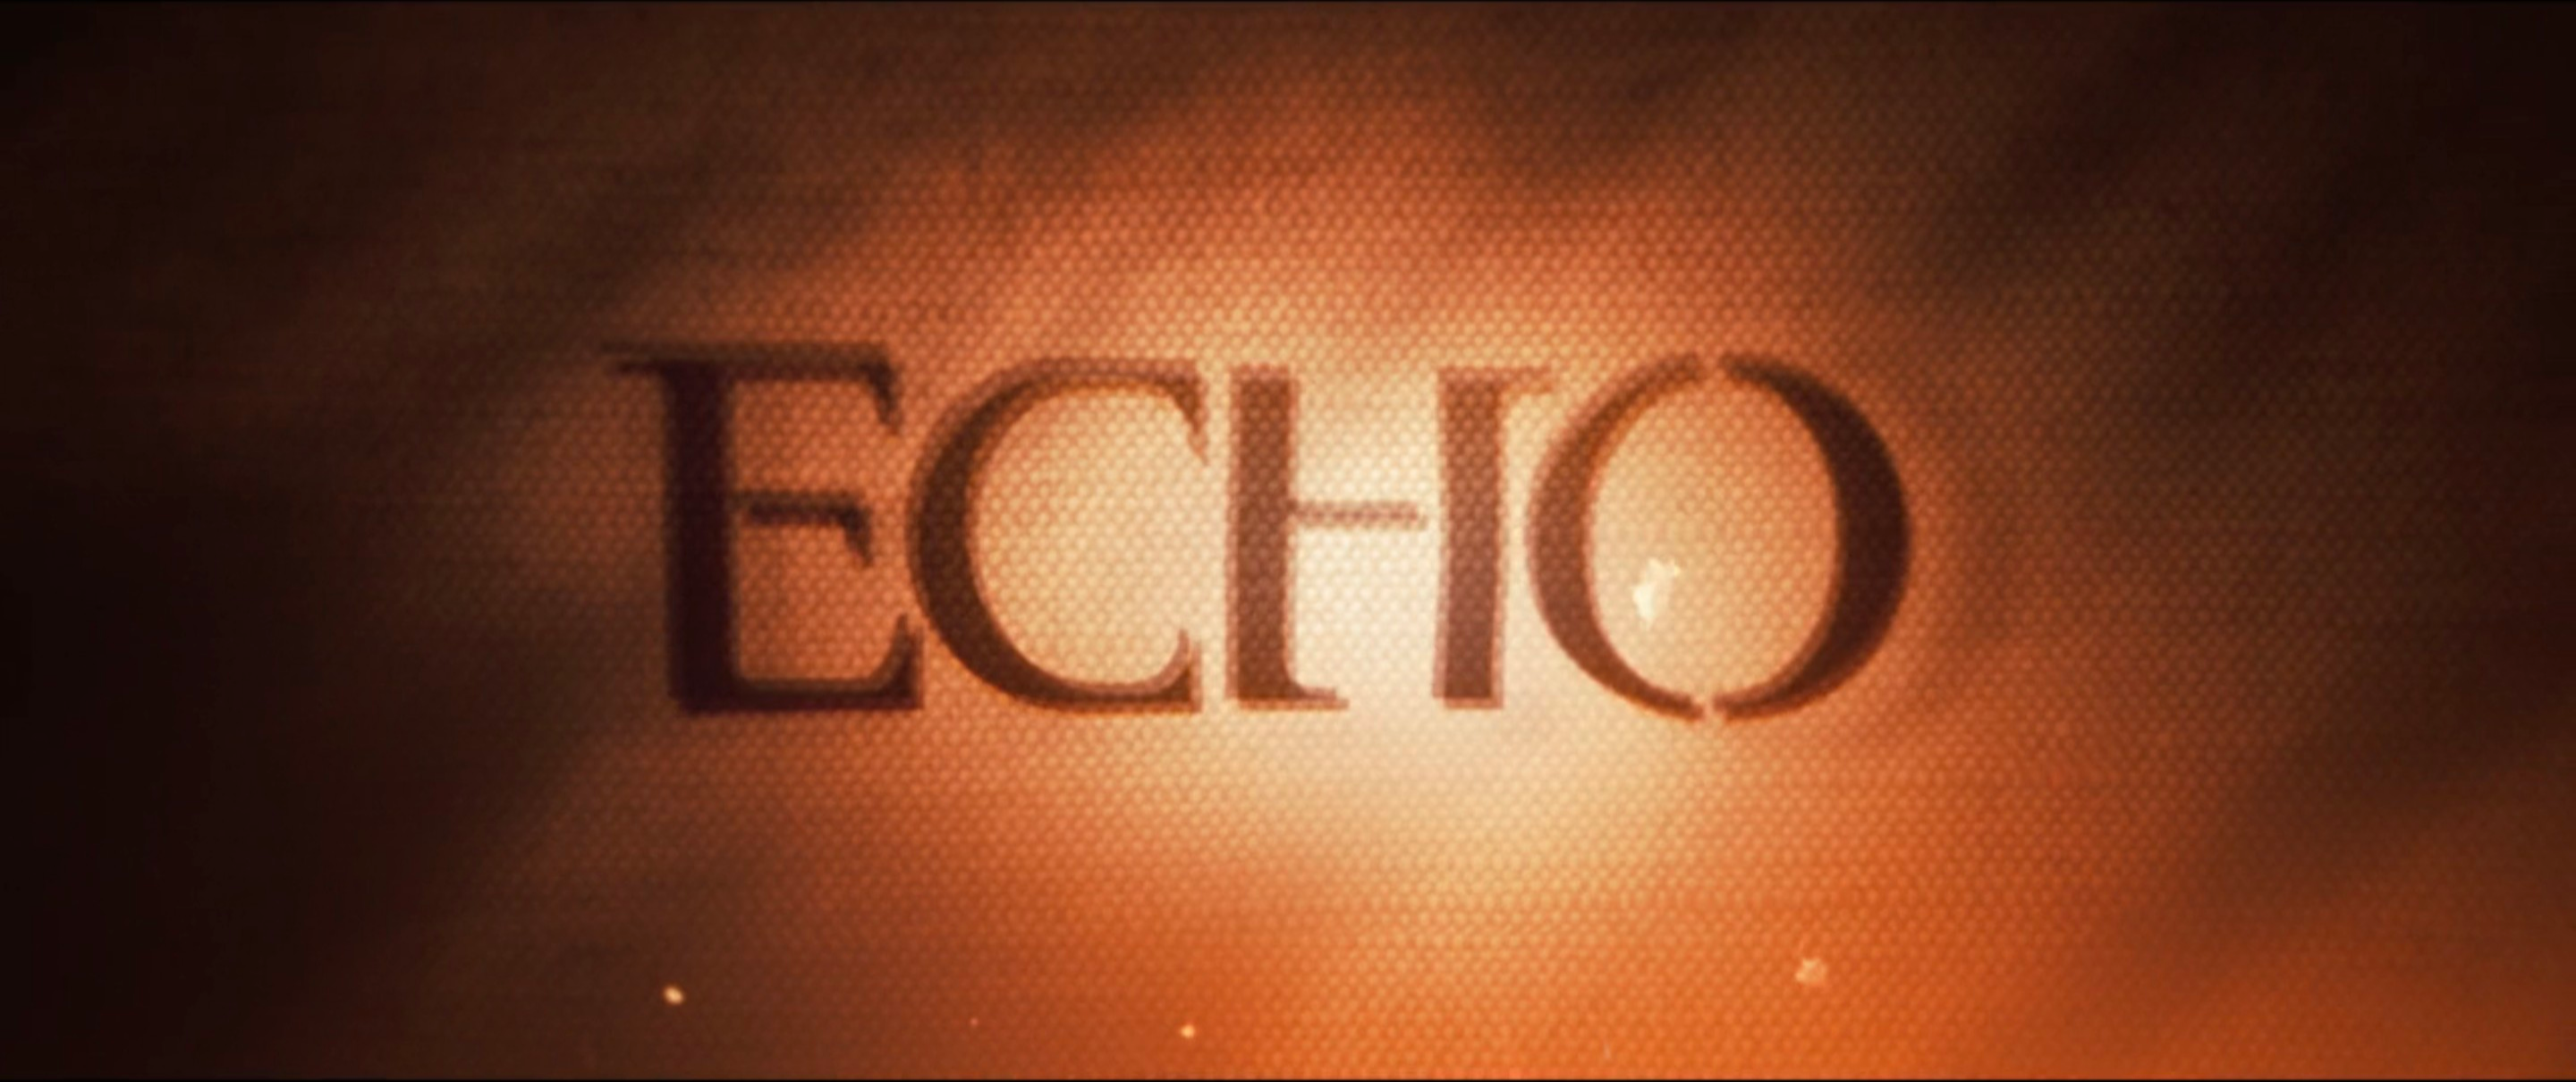 Echo - Wikipedia